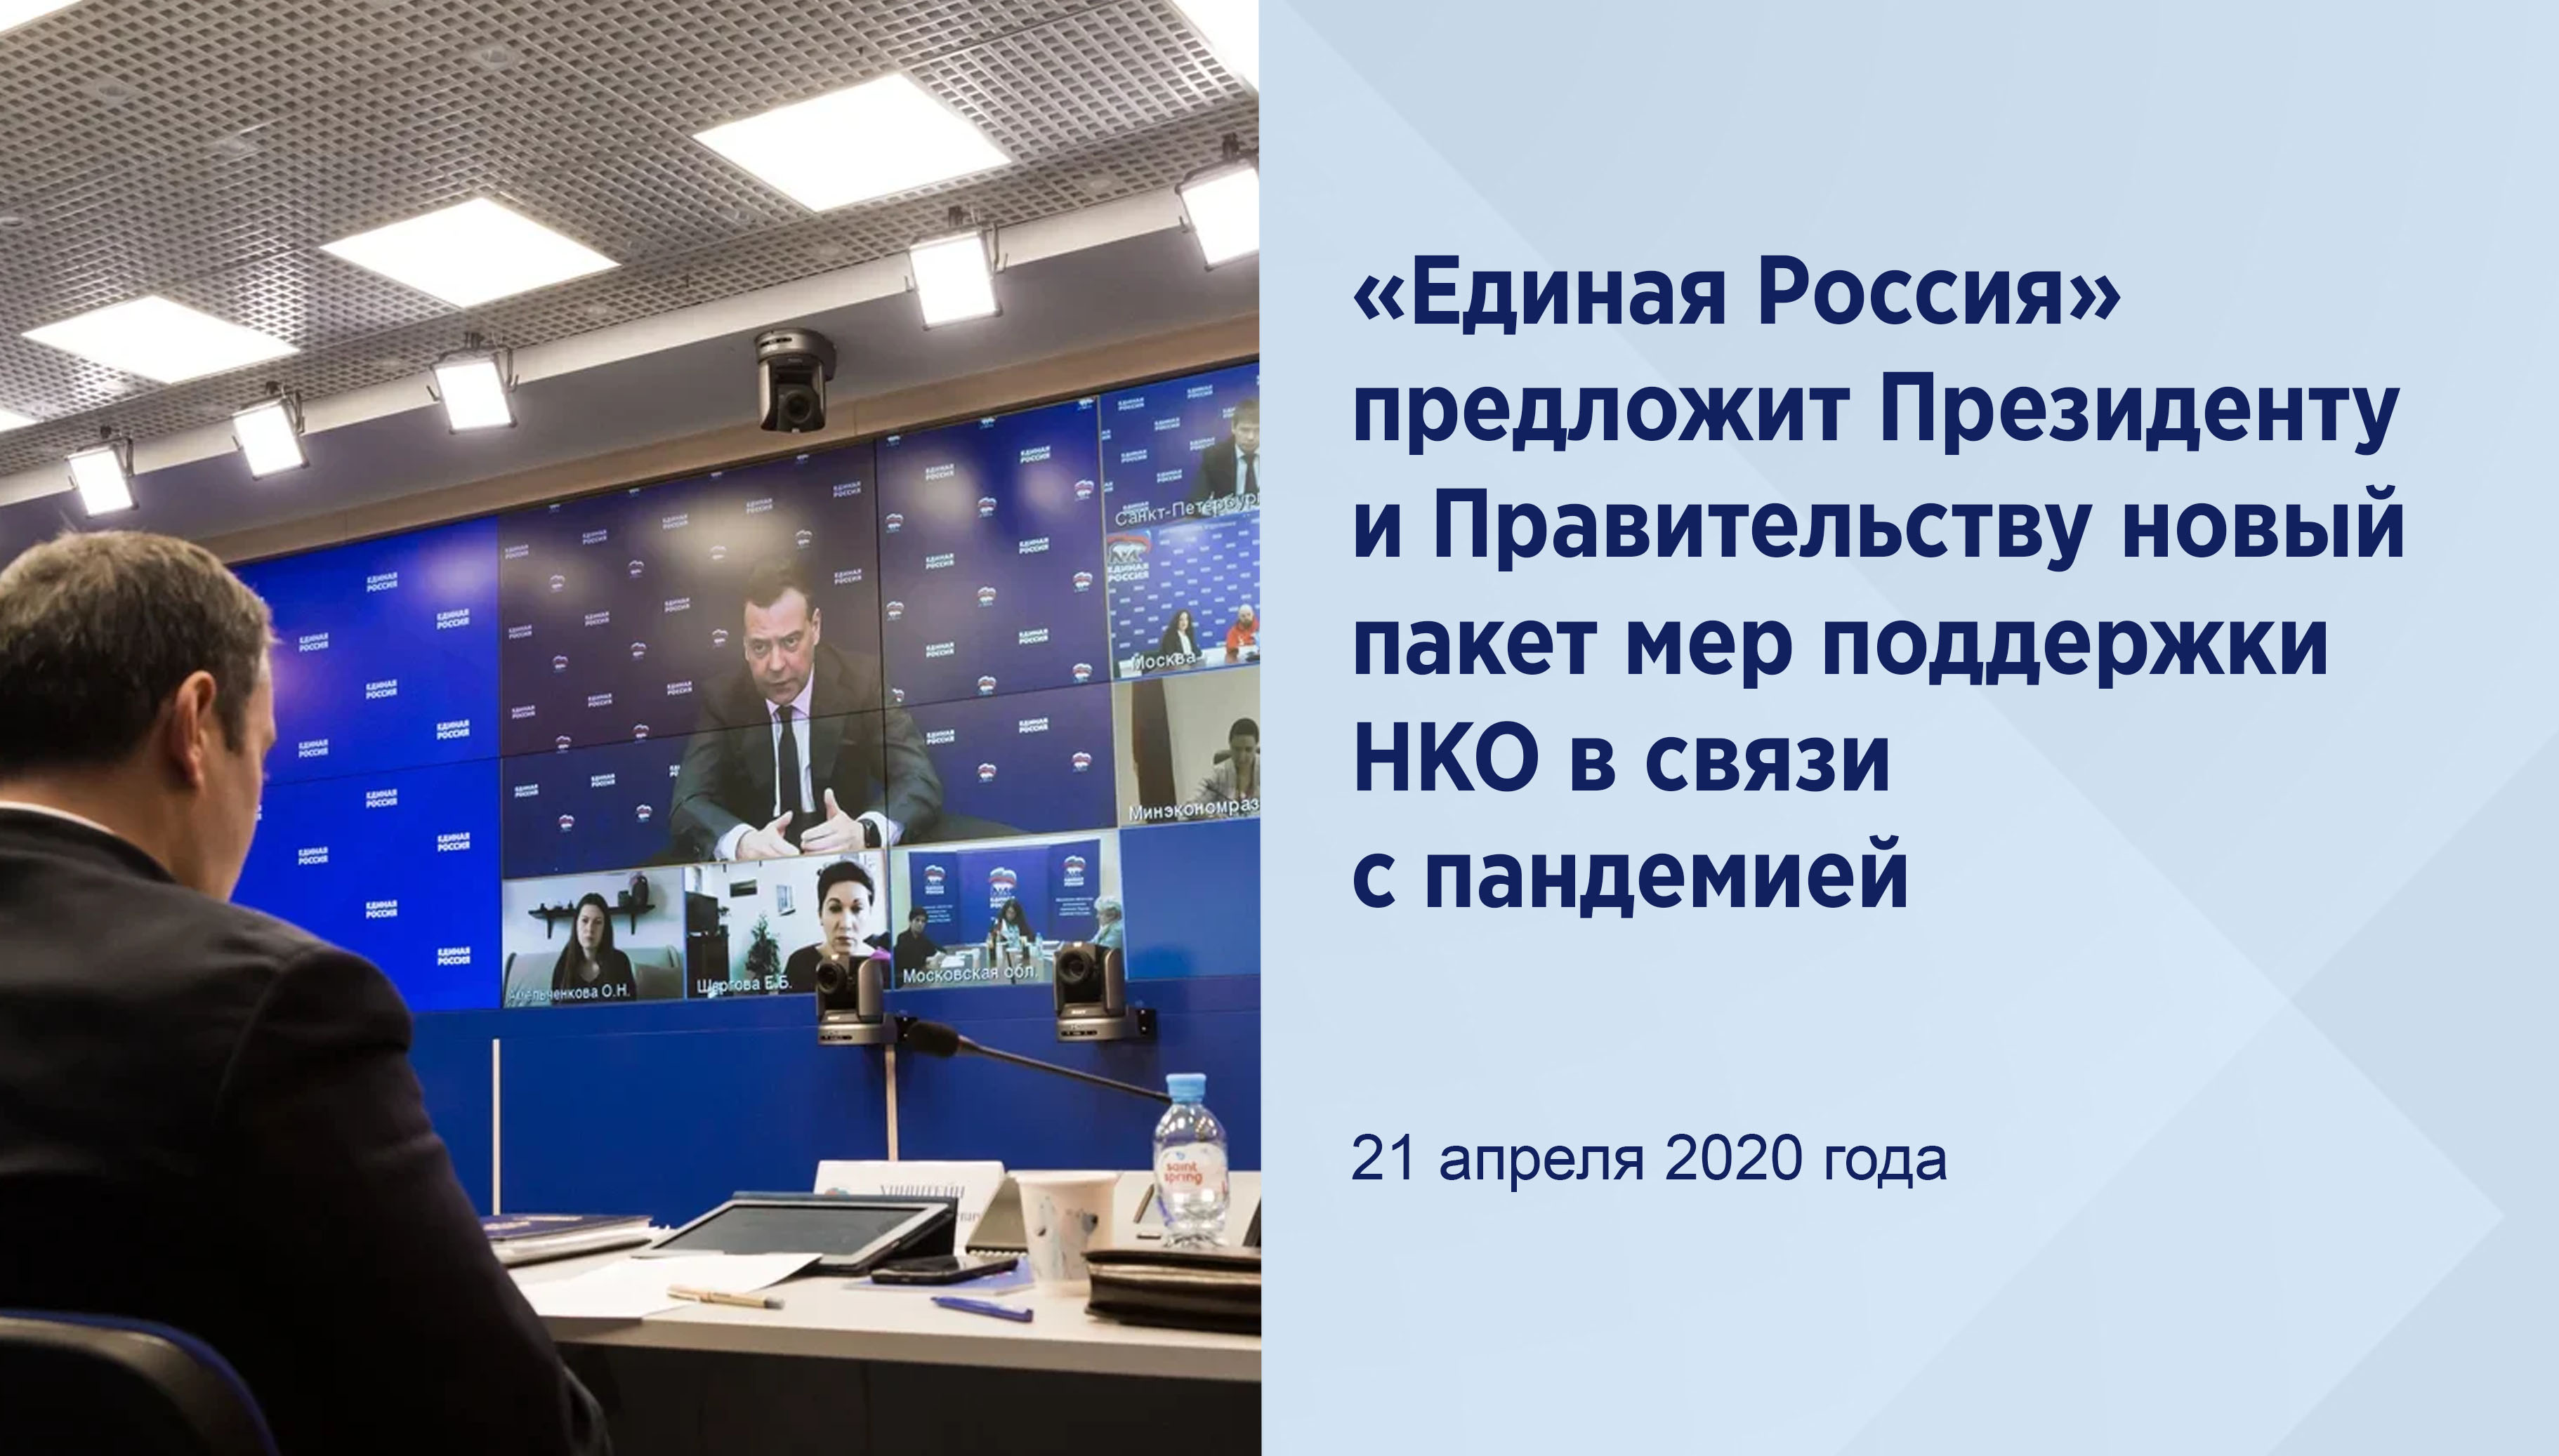 «Единая Россия» предложит
Президенту и Правительству новый
пакет мер поддержки НКО в связи с
пандемией